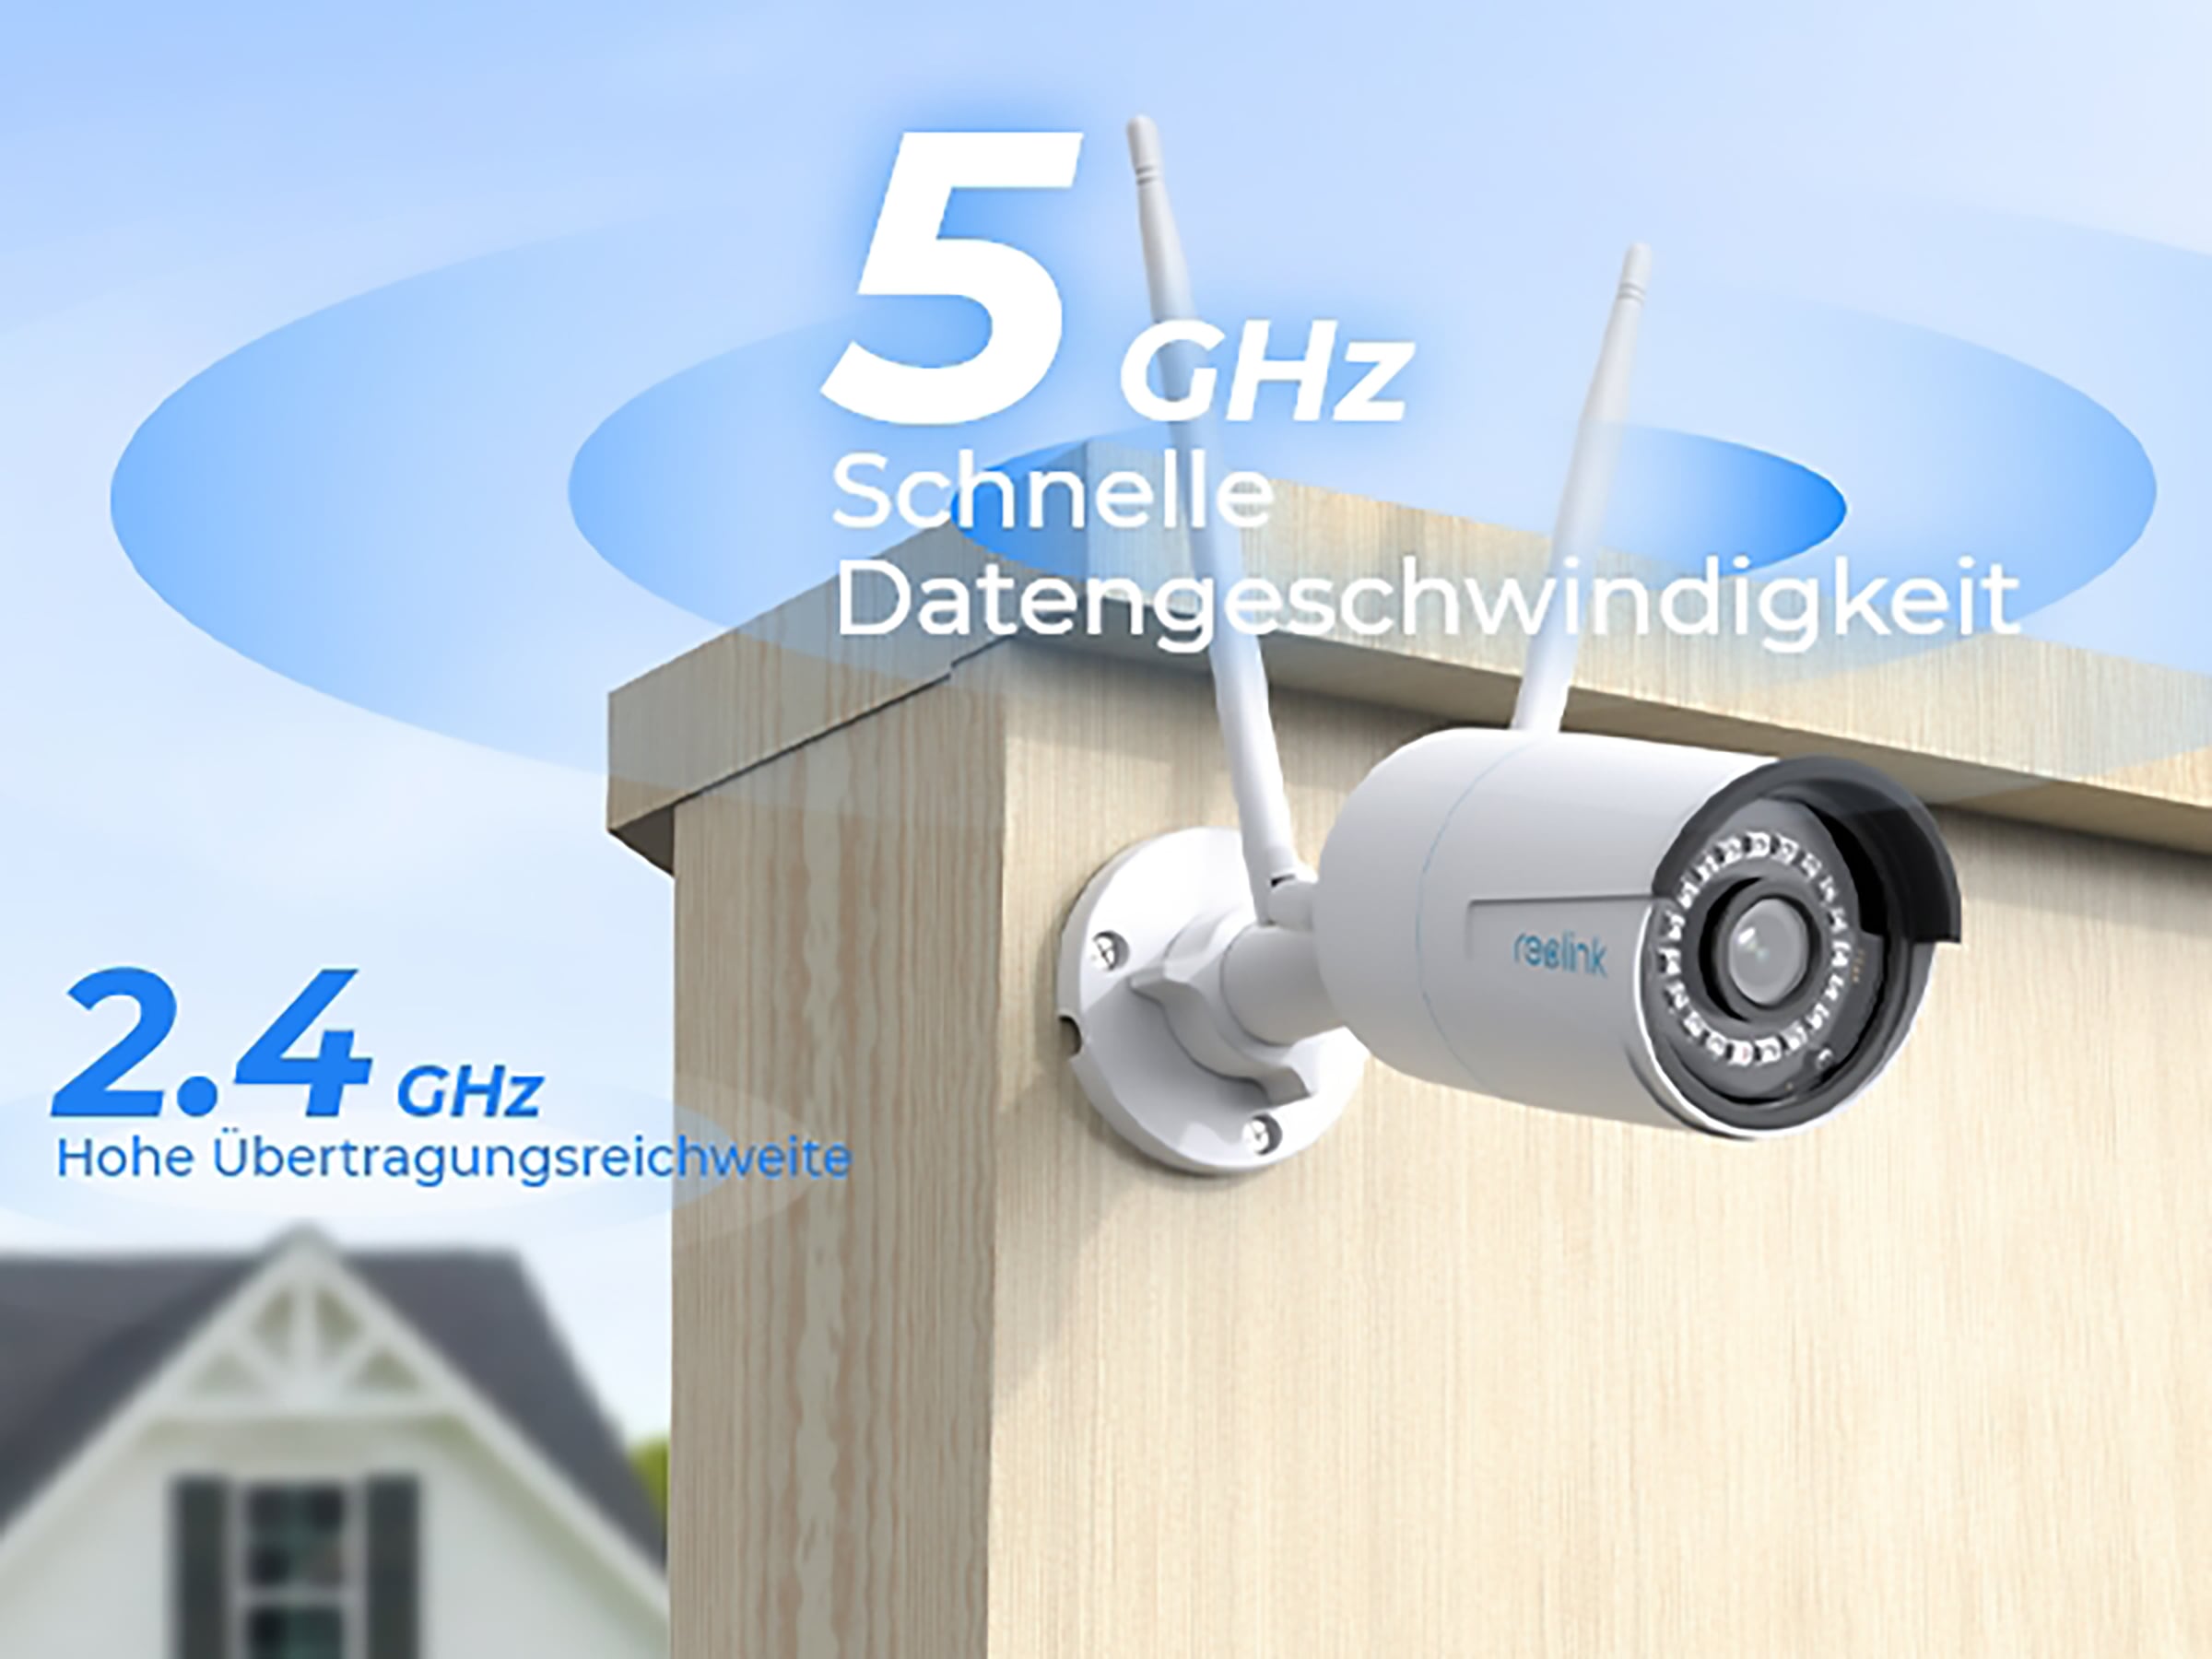 Reolink Überwachungskamera »W320«, Außenbereich-Innenbereich, Dualband-WiFi, 30 Meter Nachtsicht